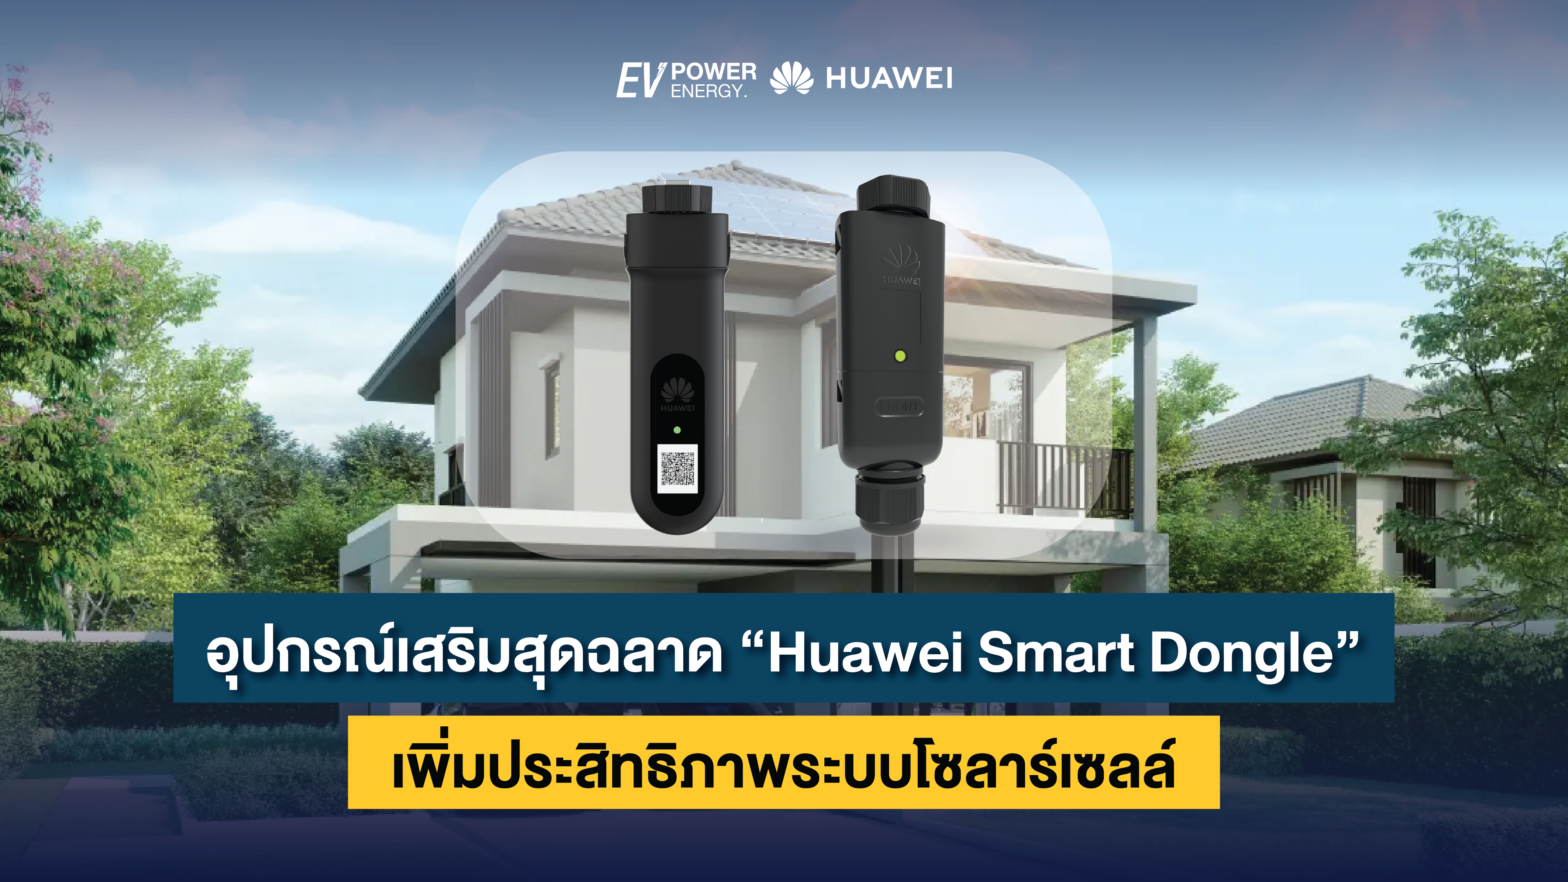 อุปกรณ์เสริมสุดฉลาด “Huawei Smart Dongle” เพิ่มประสิทธิภาพระบบโซลาร์เซลล์